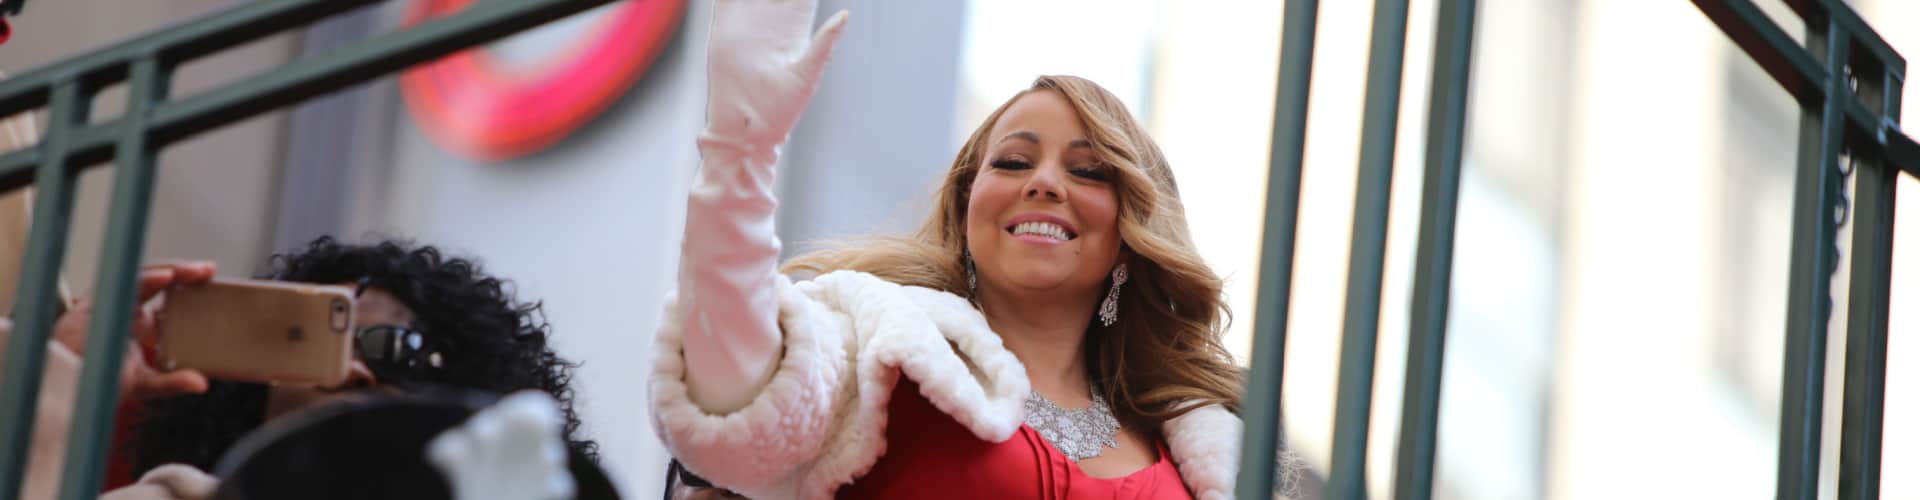 Mariah Carey waving